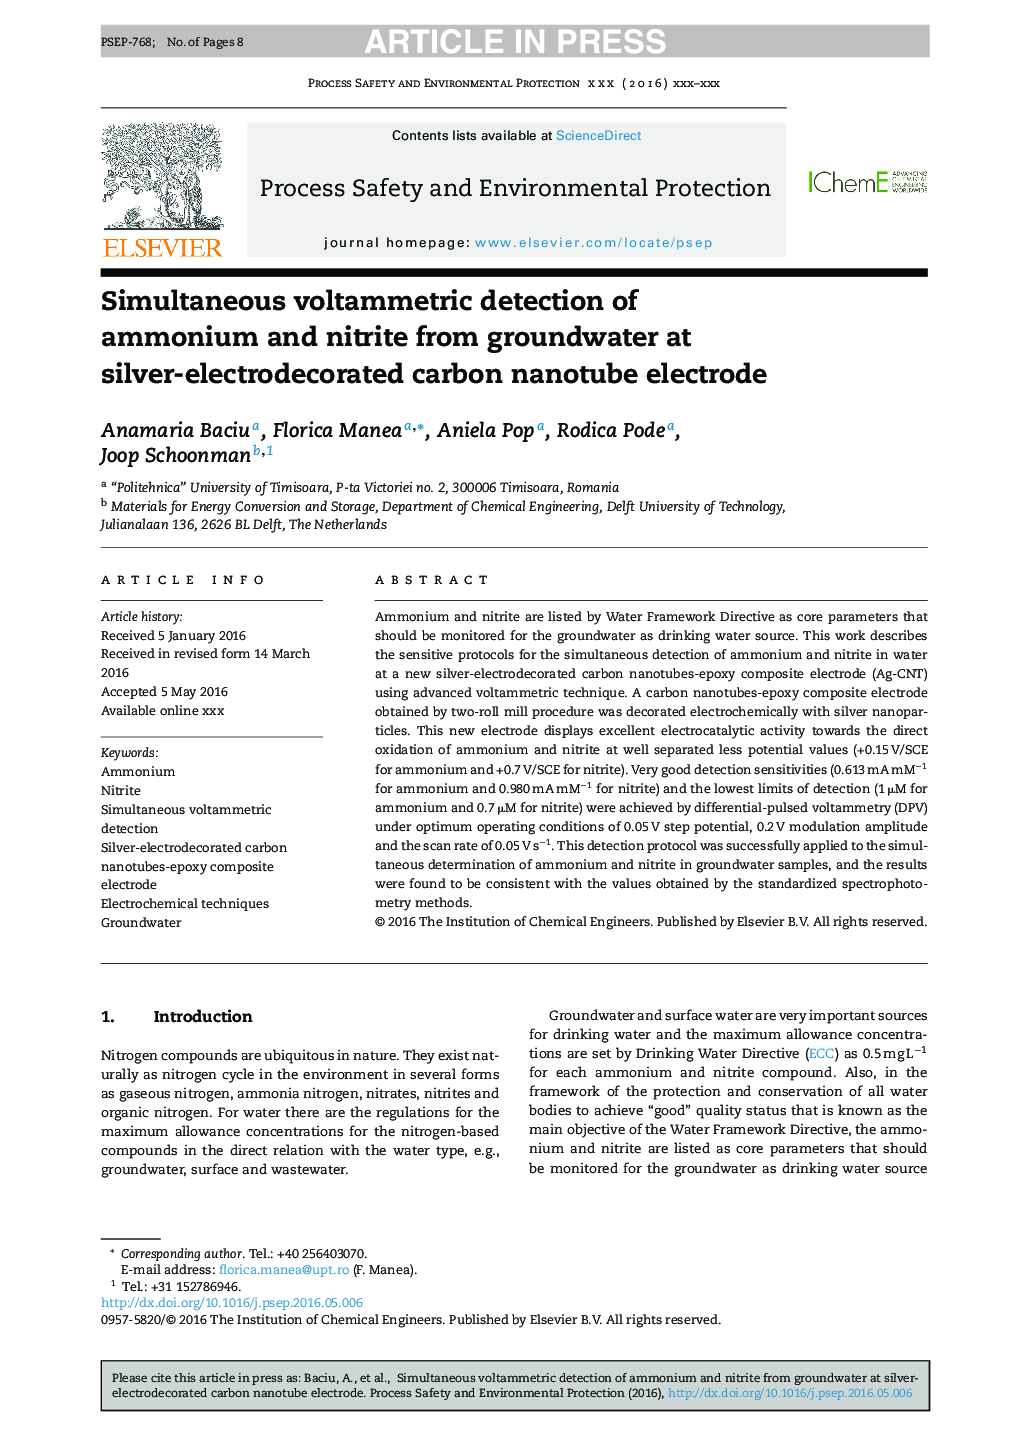 تشخیص همزمان ولتاژ آمونیاک و نیتریت از آبهای زیرزمینی در الکترود نانولوله کربنی نقره الکتریکی 